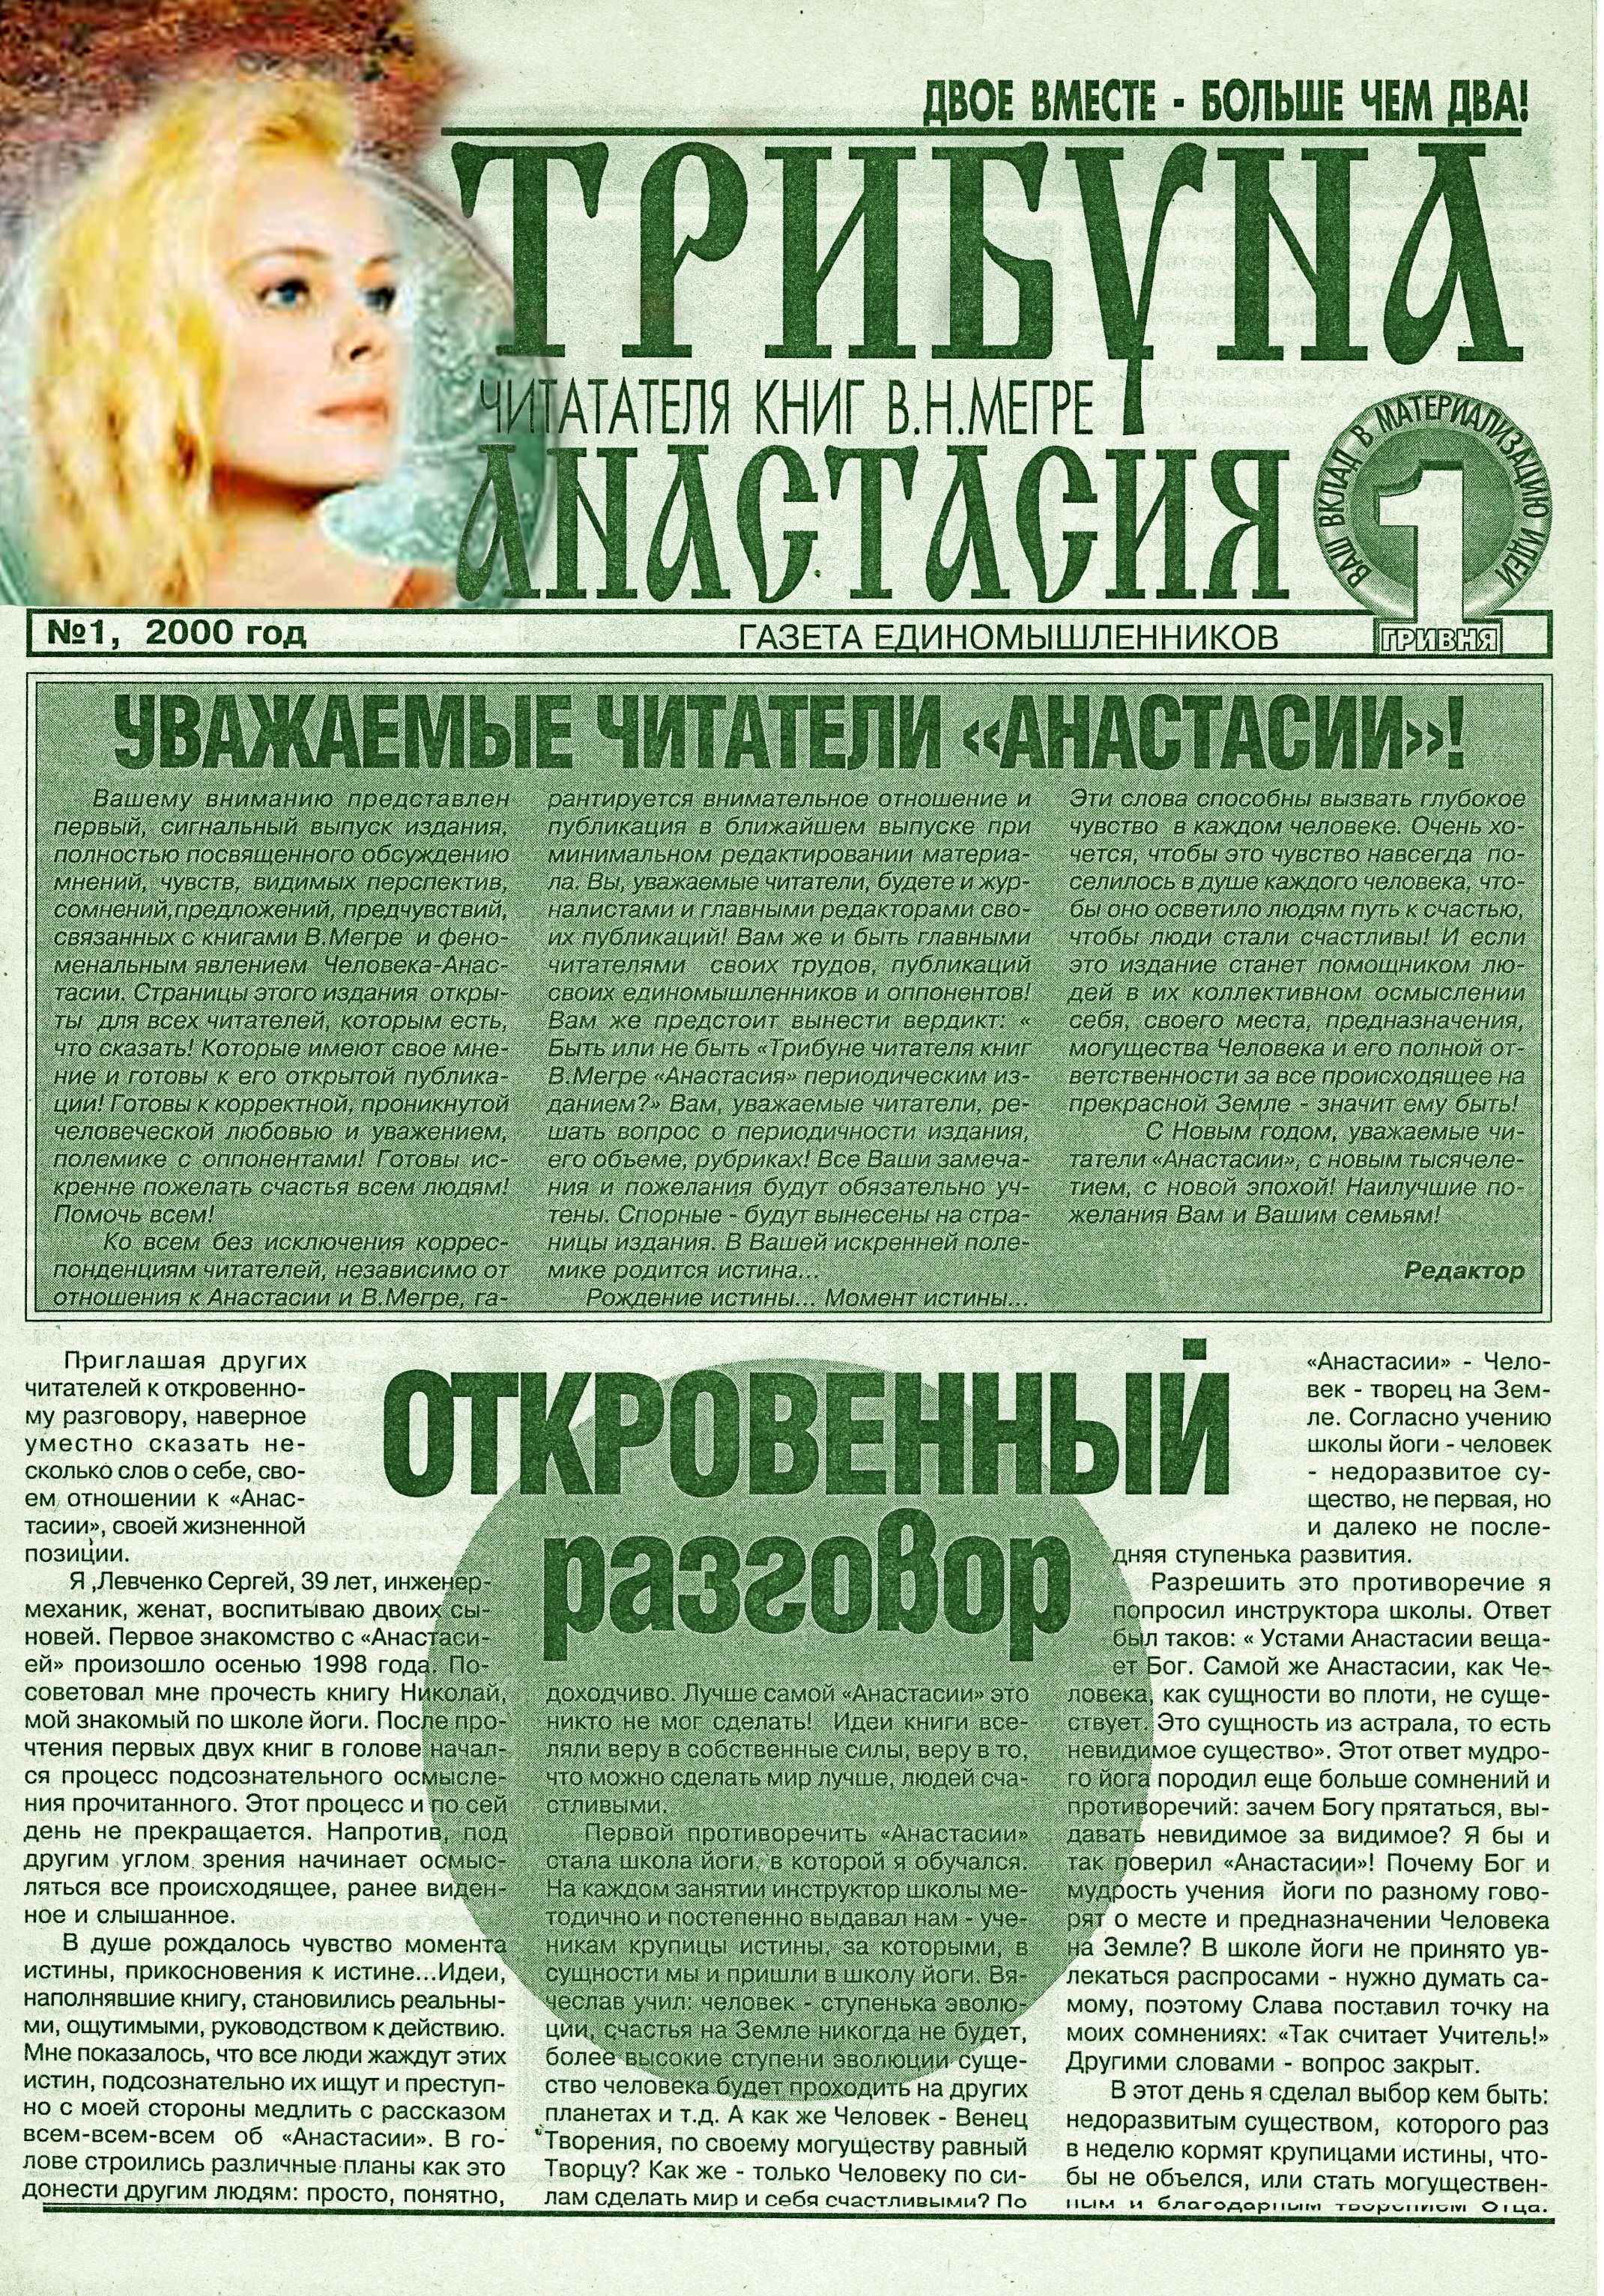 20 лет назад вышла первая газета читателей книг В.Мегре на Украине (2).jpg